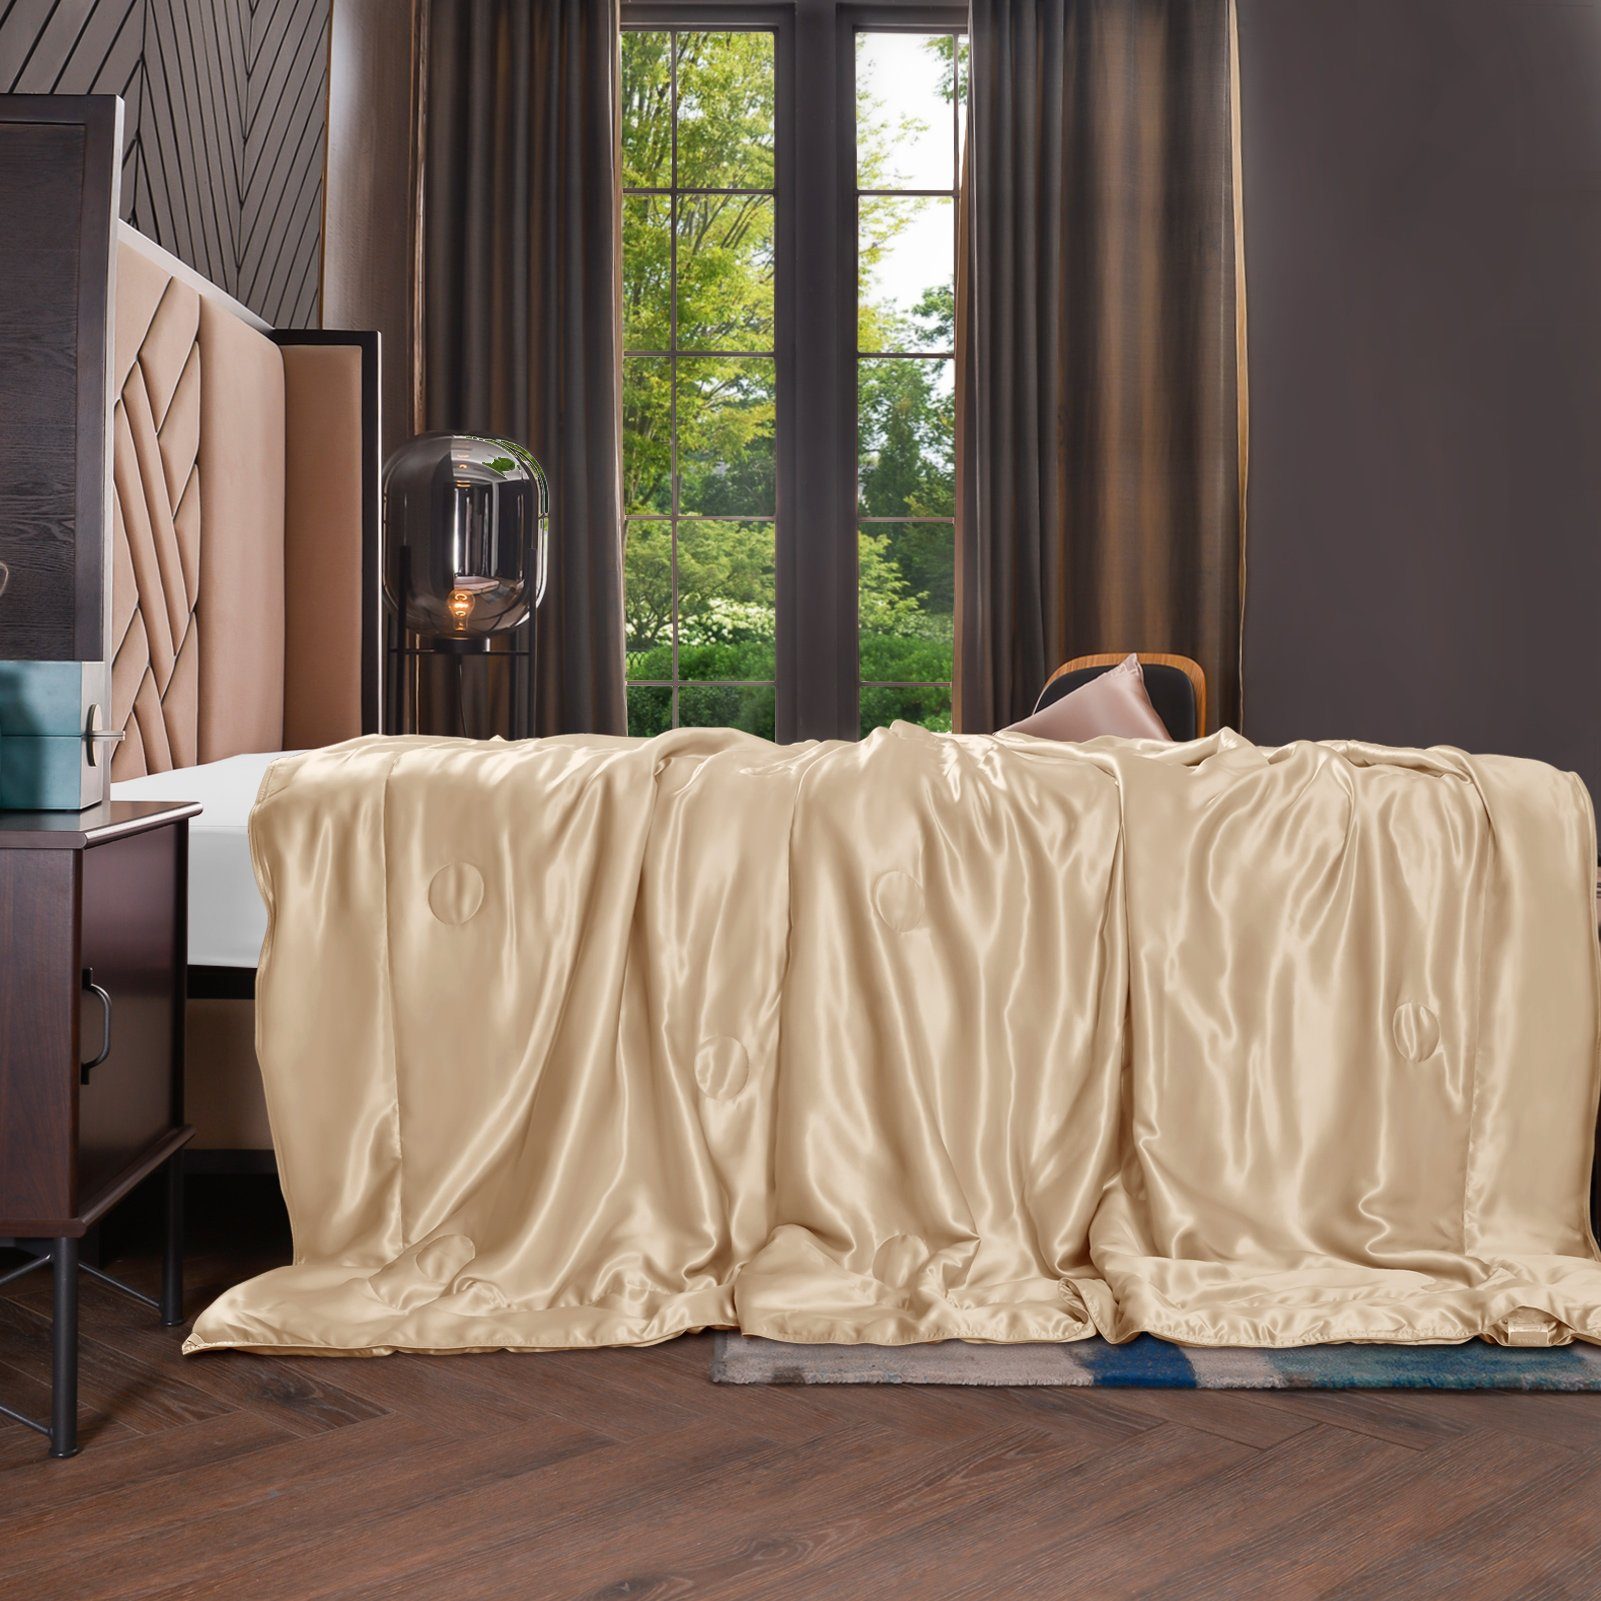 Sommerbettdecke, 135x180 cm, THXSILK, Füllung: 100% Seide, Bezug: 100% Seide, kühlend, leicht, hautfreundlich Golden